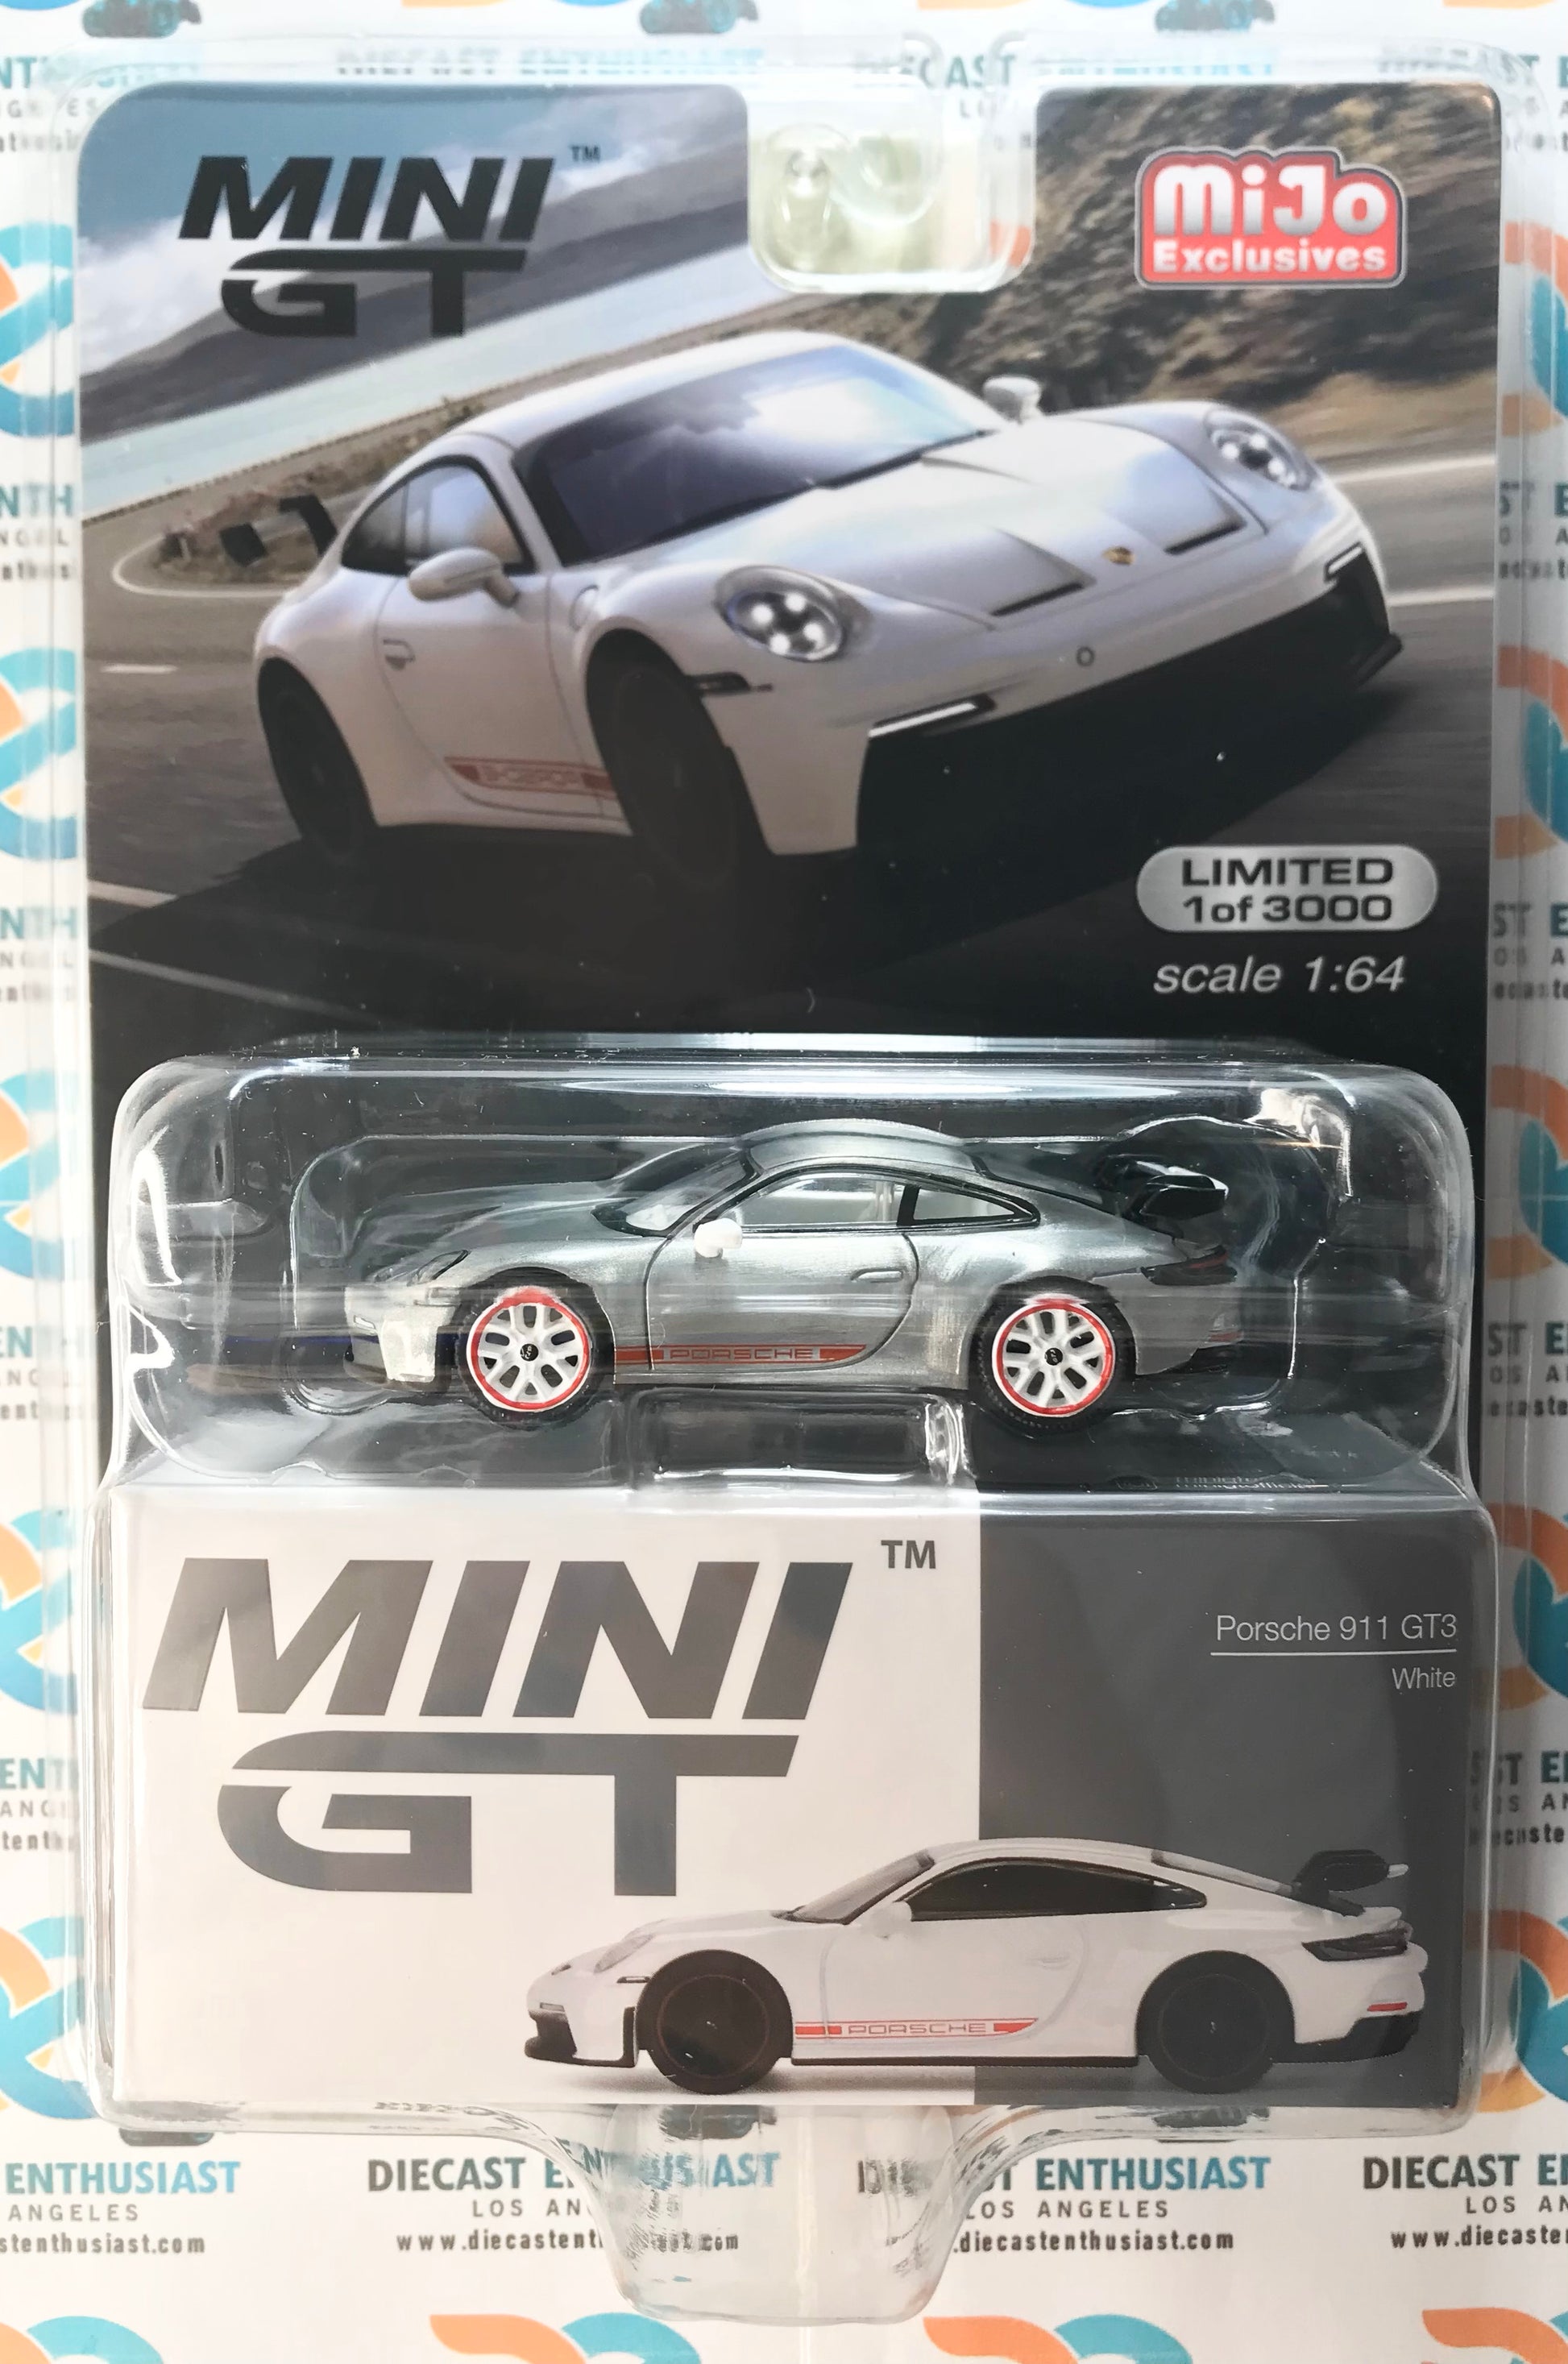 FIRST LOOK: MINI GT Porsche 911 GT3 RS! •